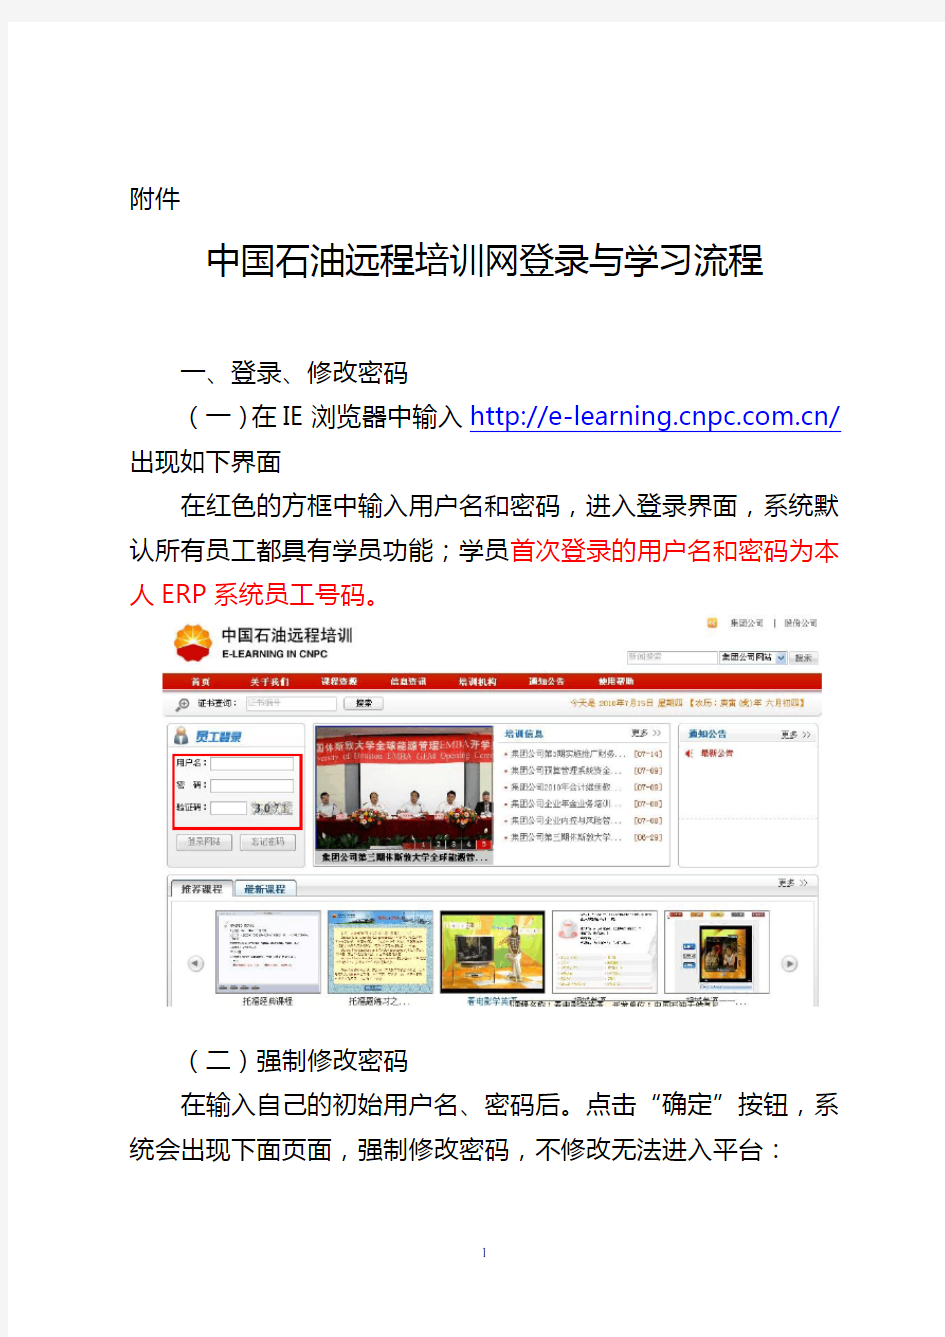 中国石油远程培训网登录与学习流程